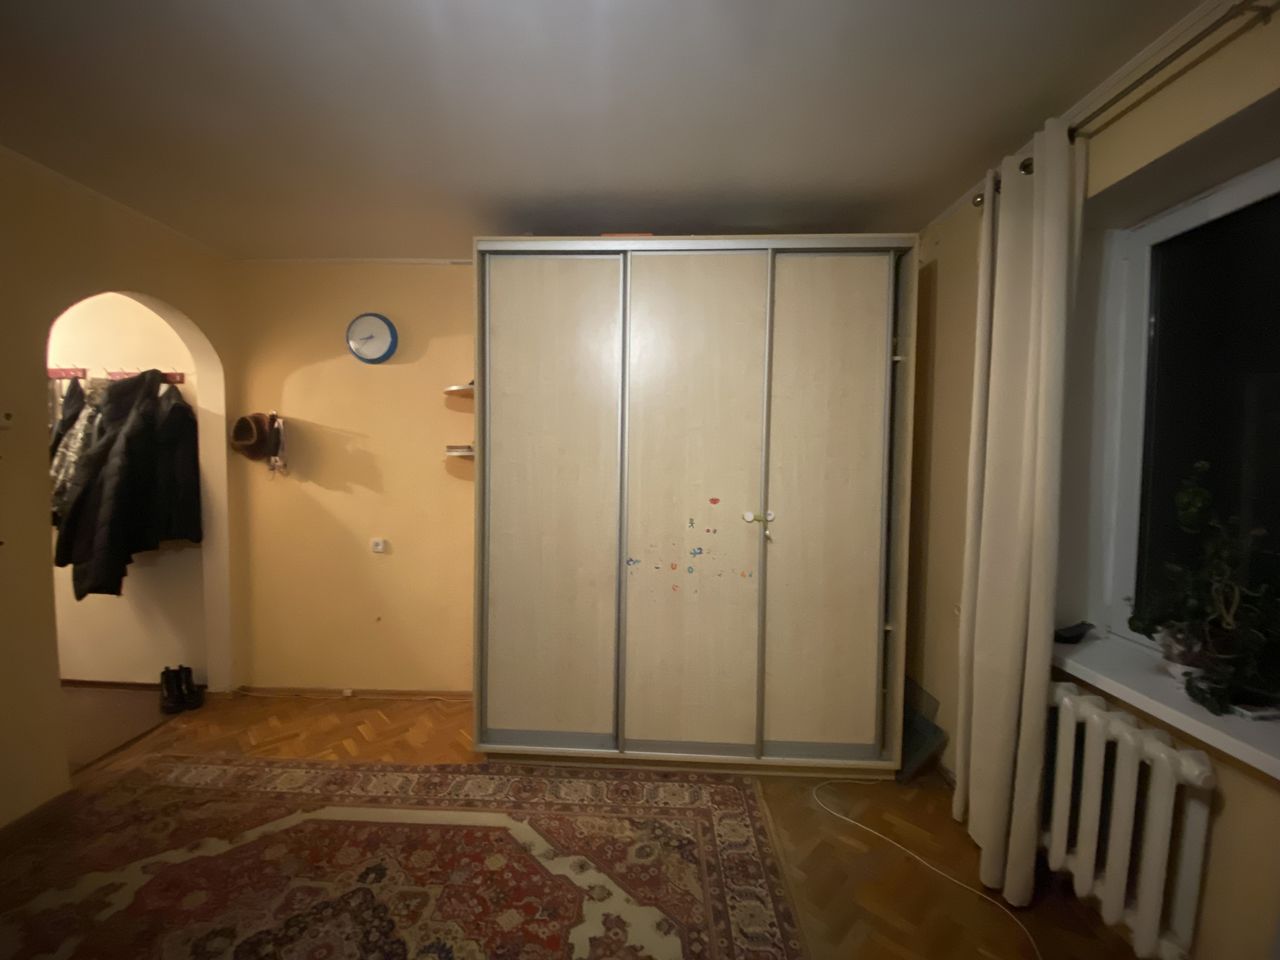 VÂNDUT Apartament de vânzare, Chișinău, sec. Telecentru, 2 odăi, încălzire autonomă, termopane, 45 m2, et.4